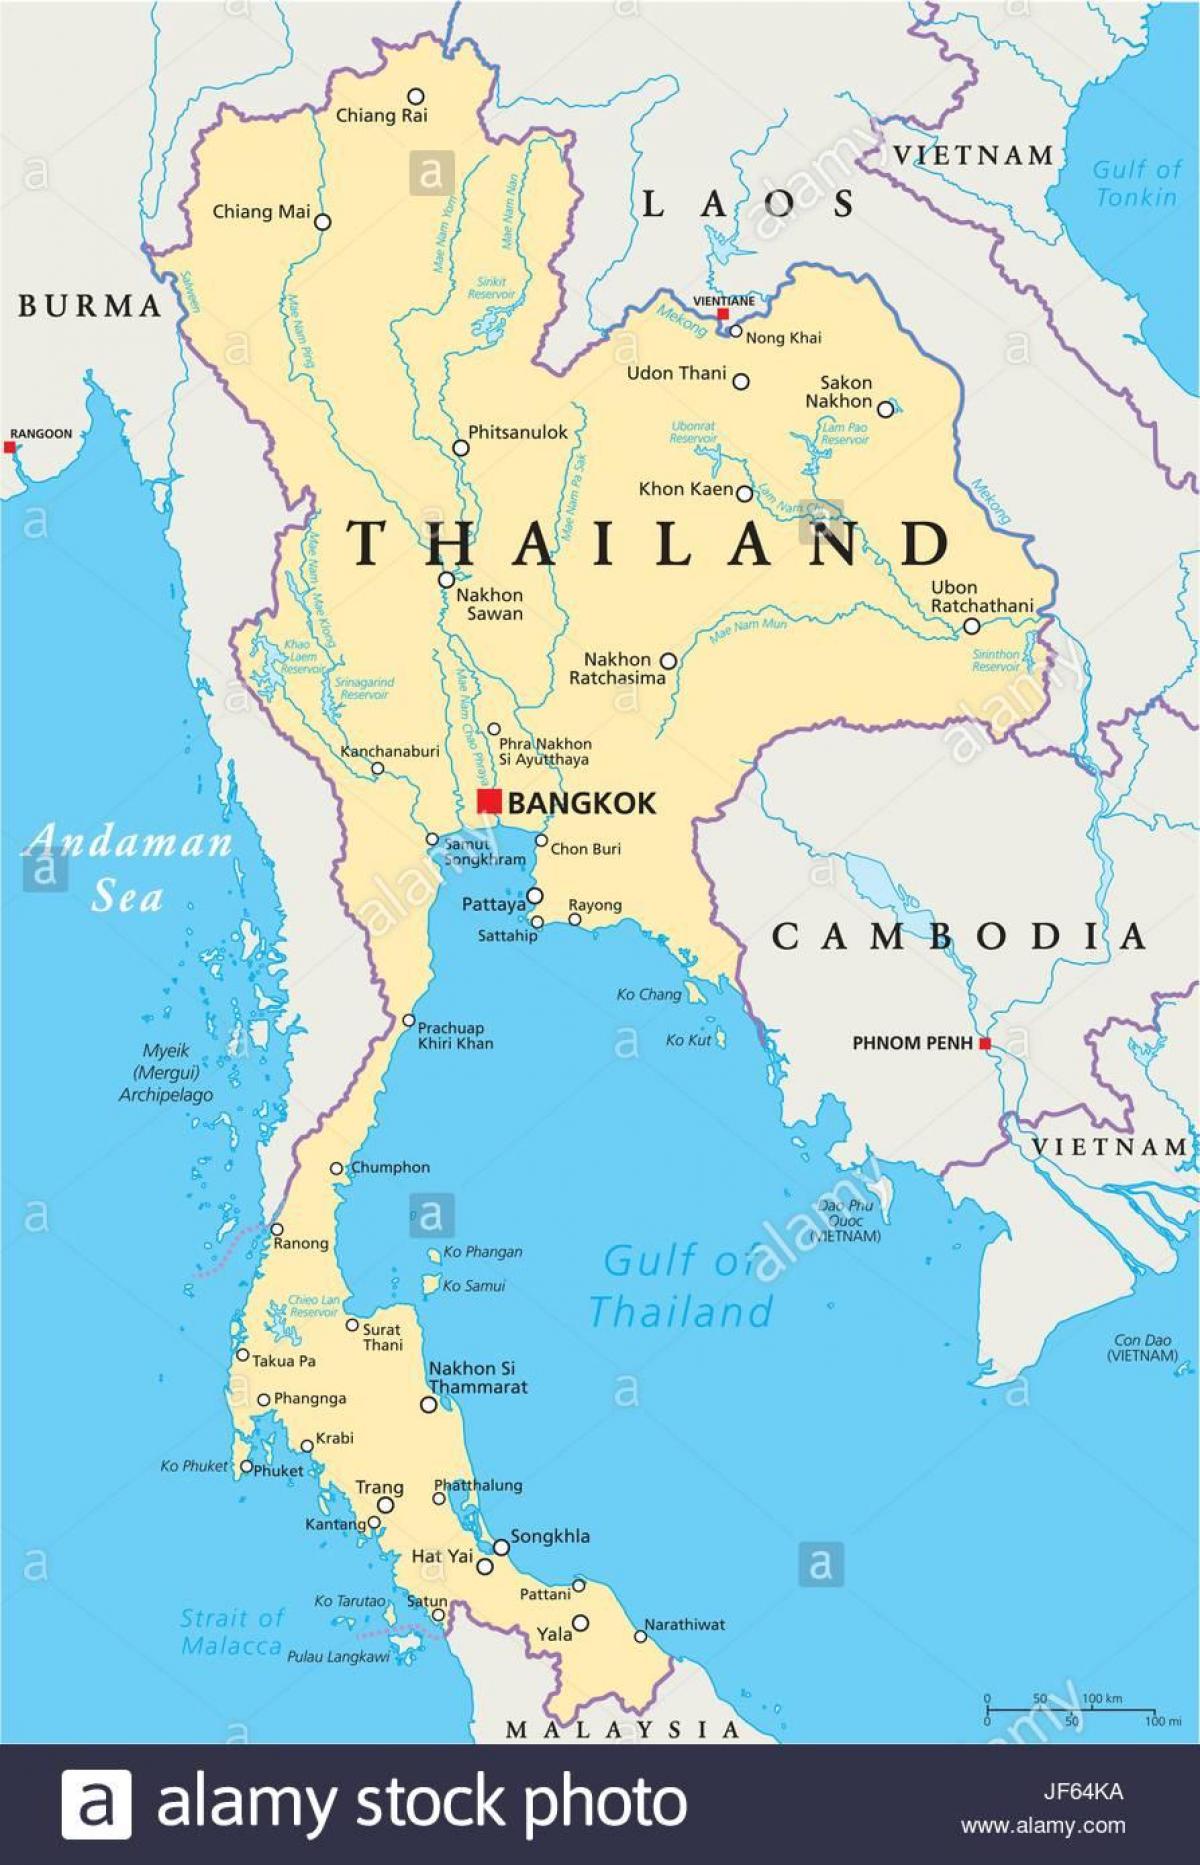 Бангкок, Таиланд карта мира